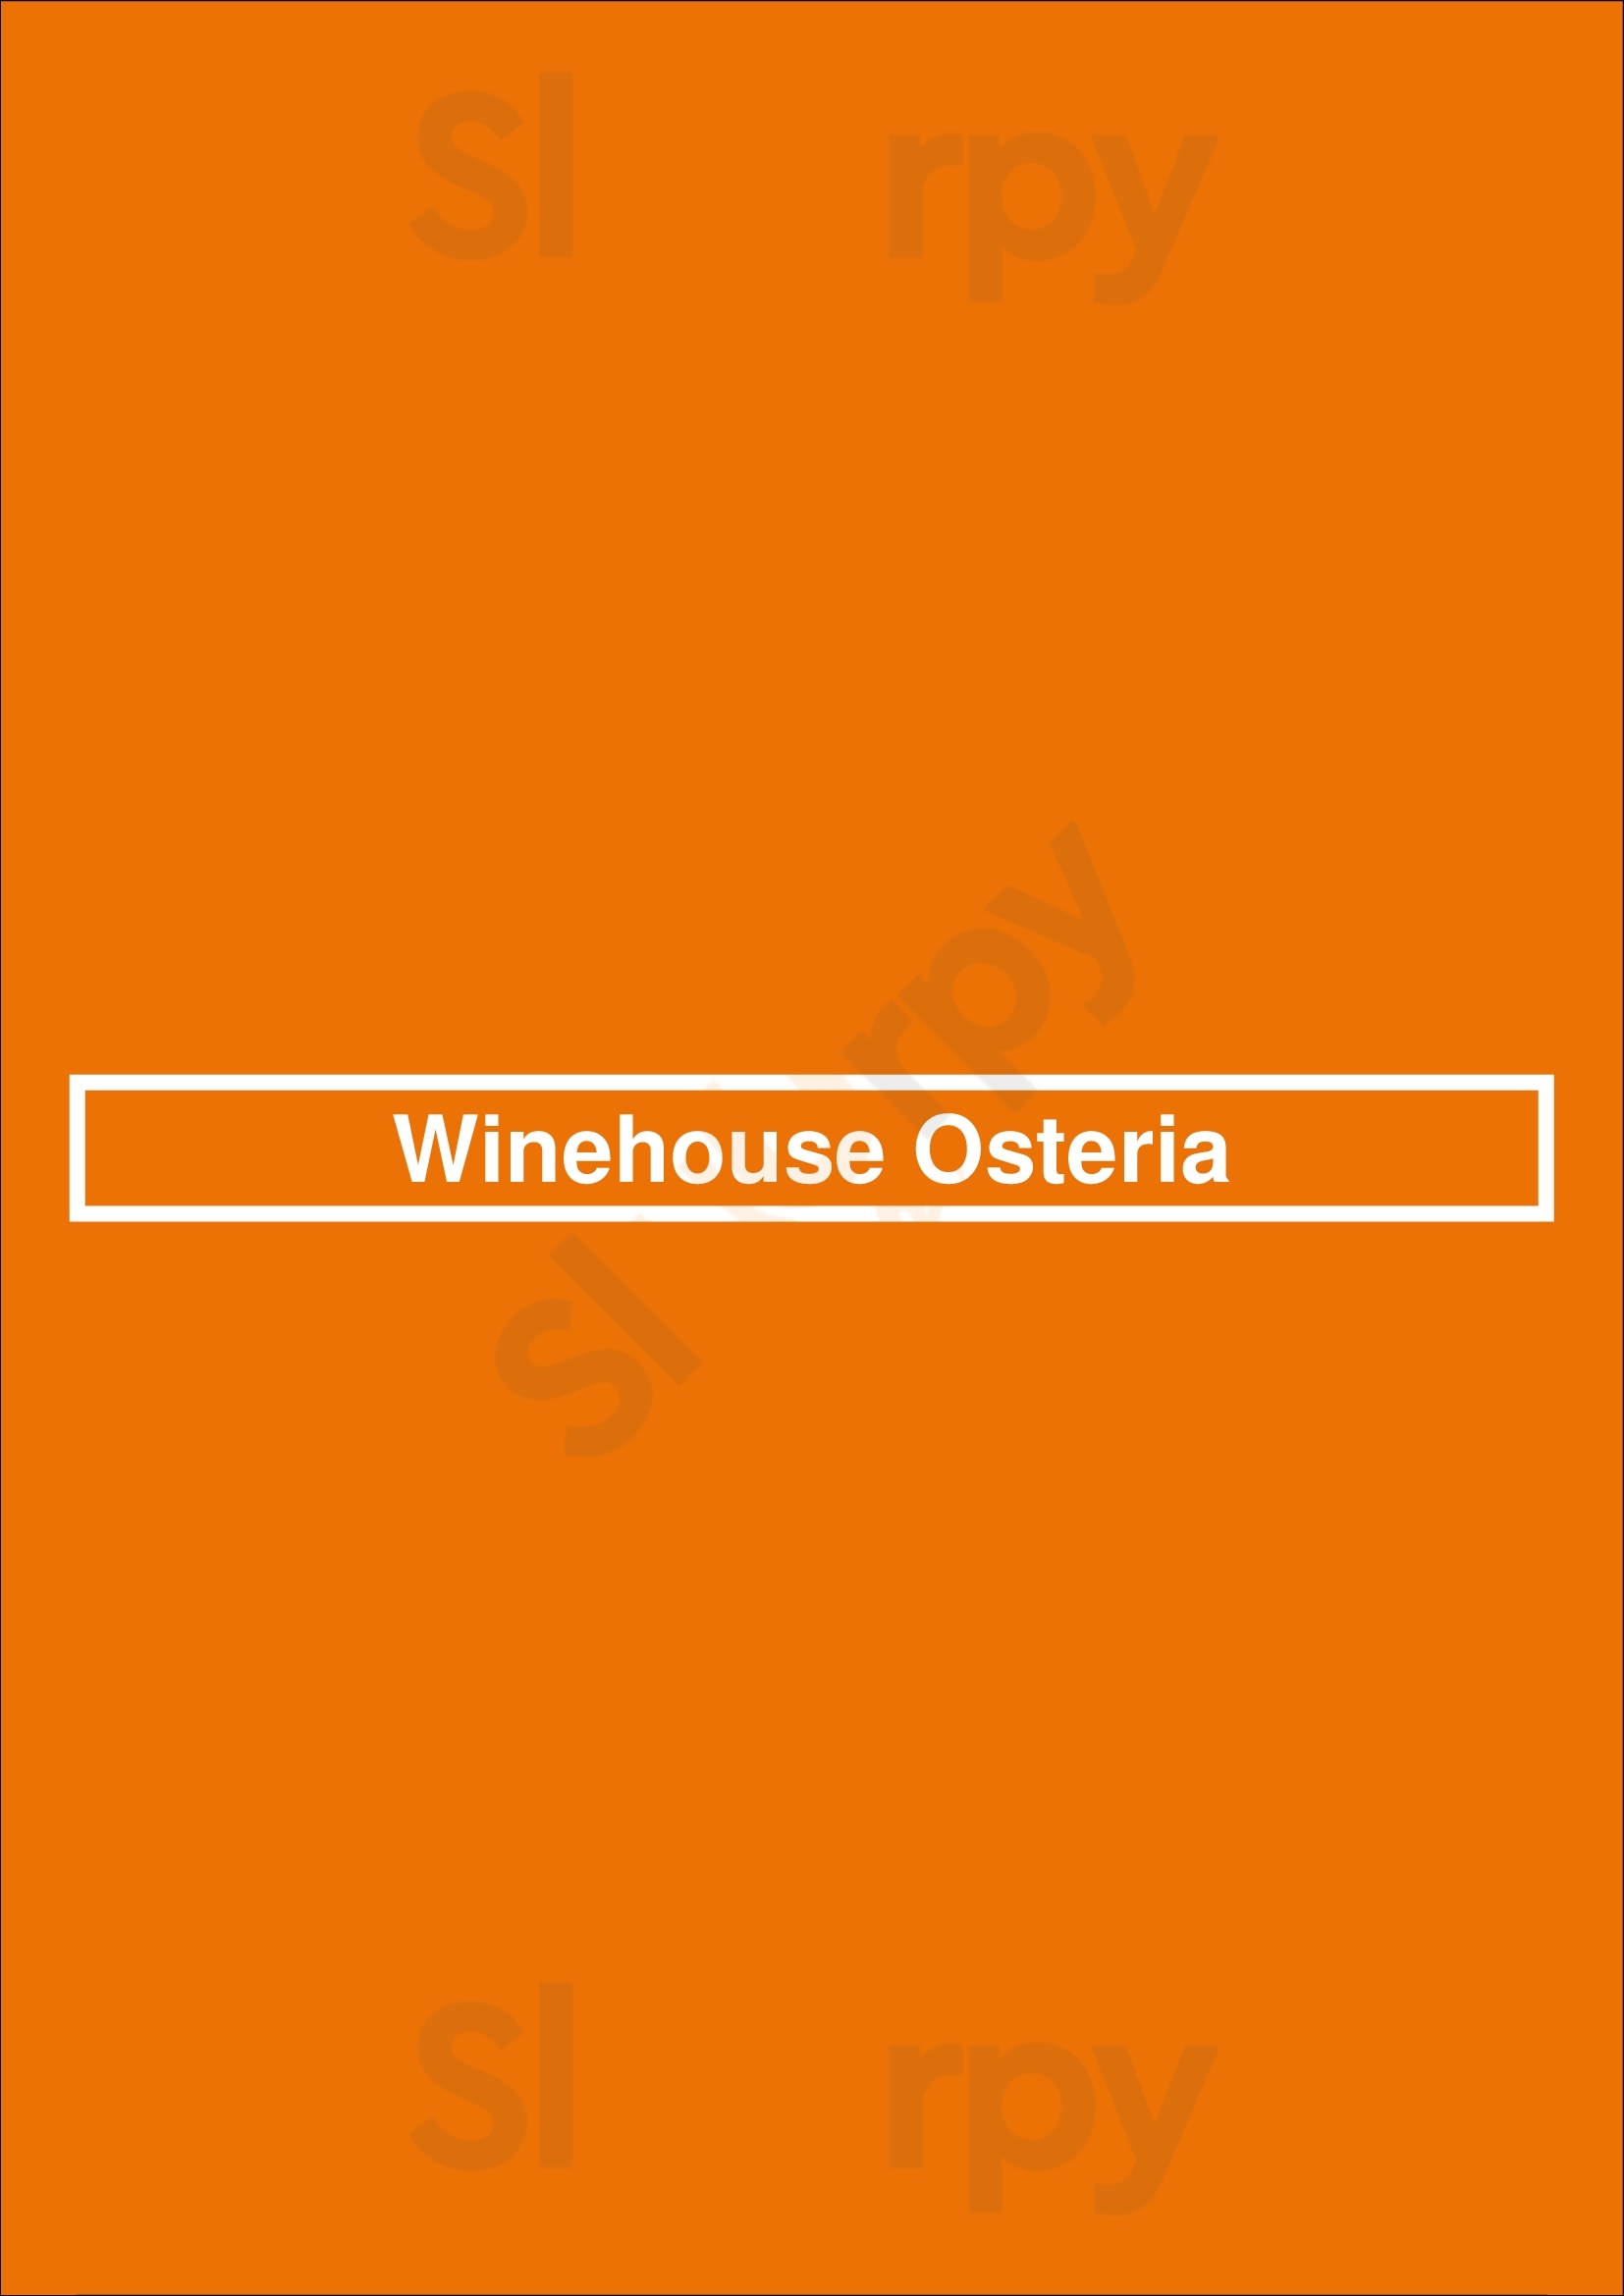 Winehouse Osteria Bruxelles Menu - 1